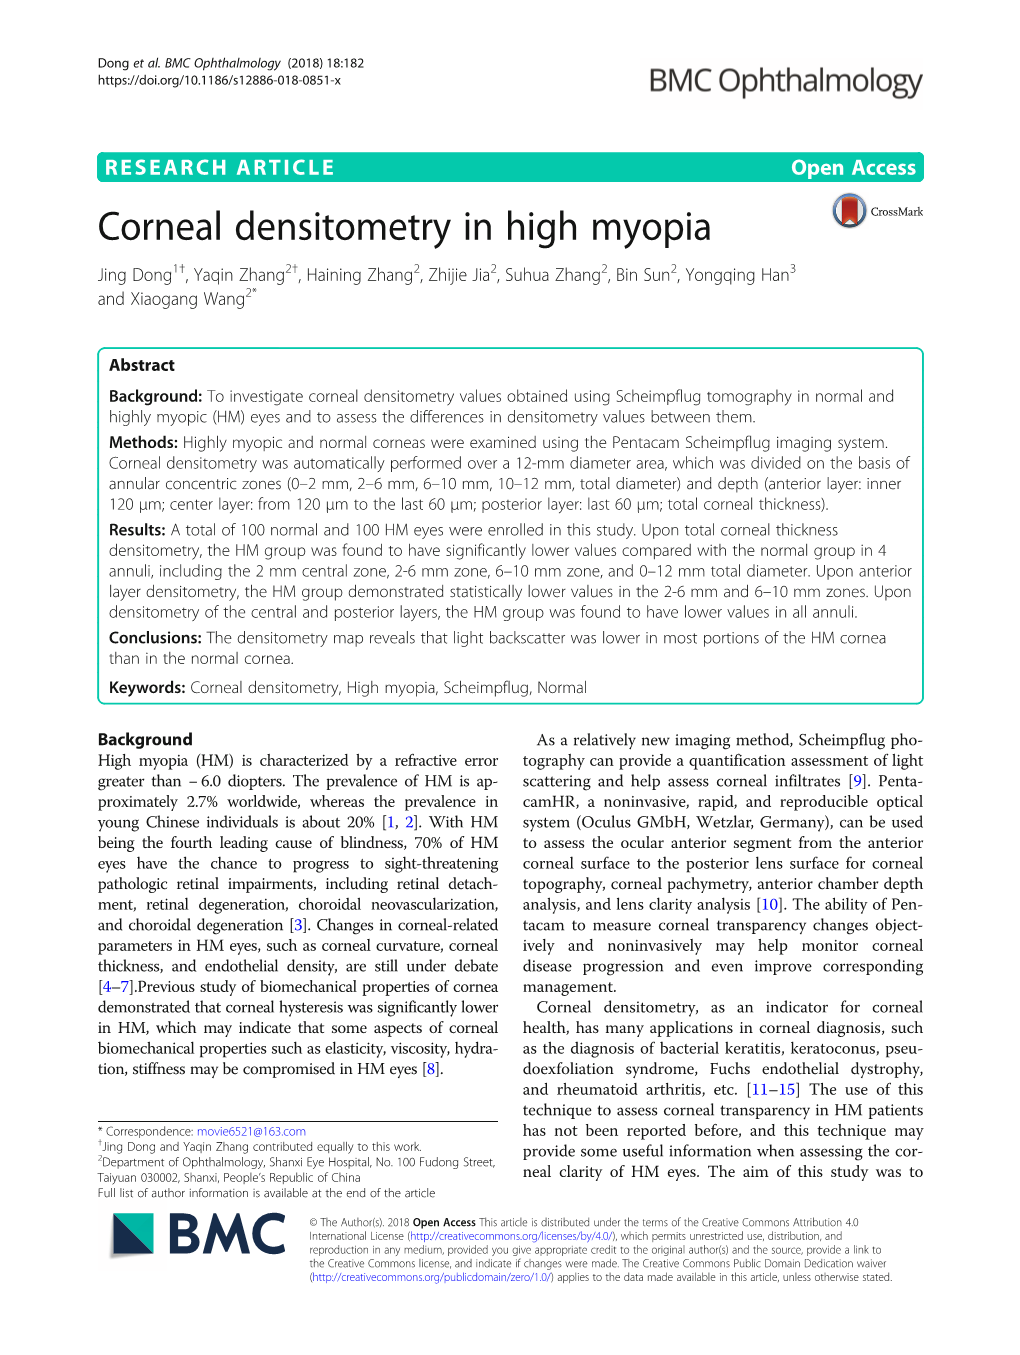 Corneal Densitometry in High Myopia Jing Dong1†, Yaqin Zhang2†, Haining Zhang2, Zhijie Jia2, Suhua Zhang2, Bin Sun2, Yongqing Han3 and Xiaogang Wang2*